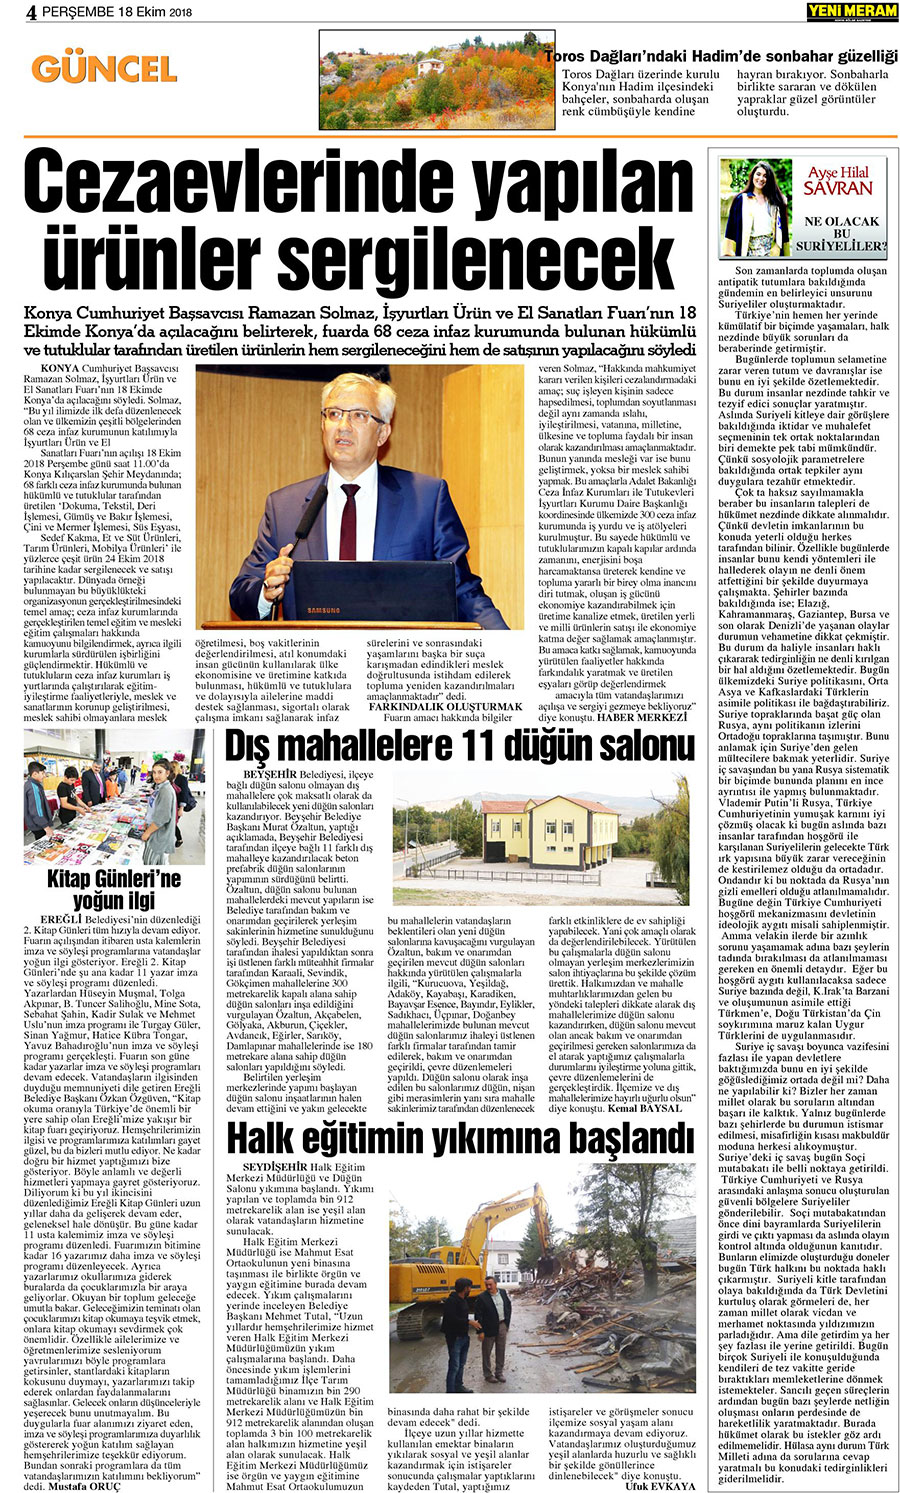 18 Ekim 2018 Yeni Meram Gazetesi